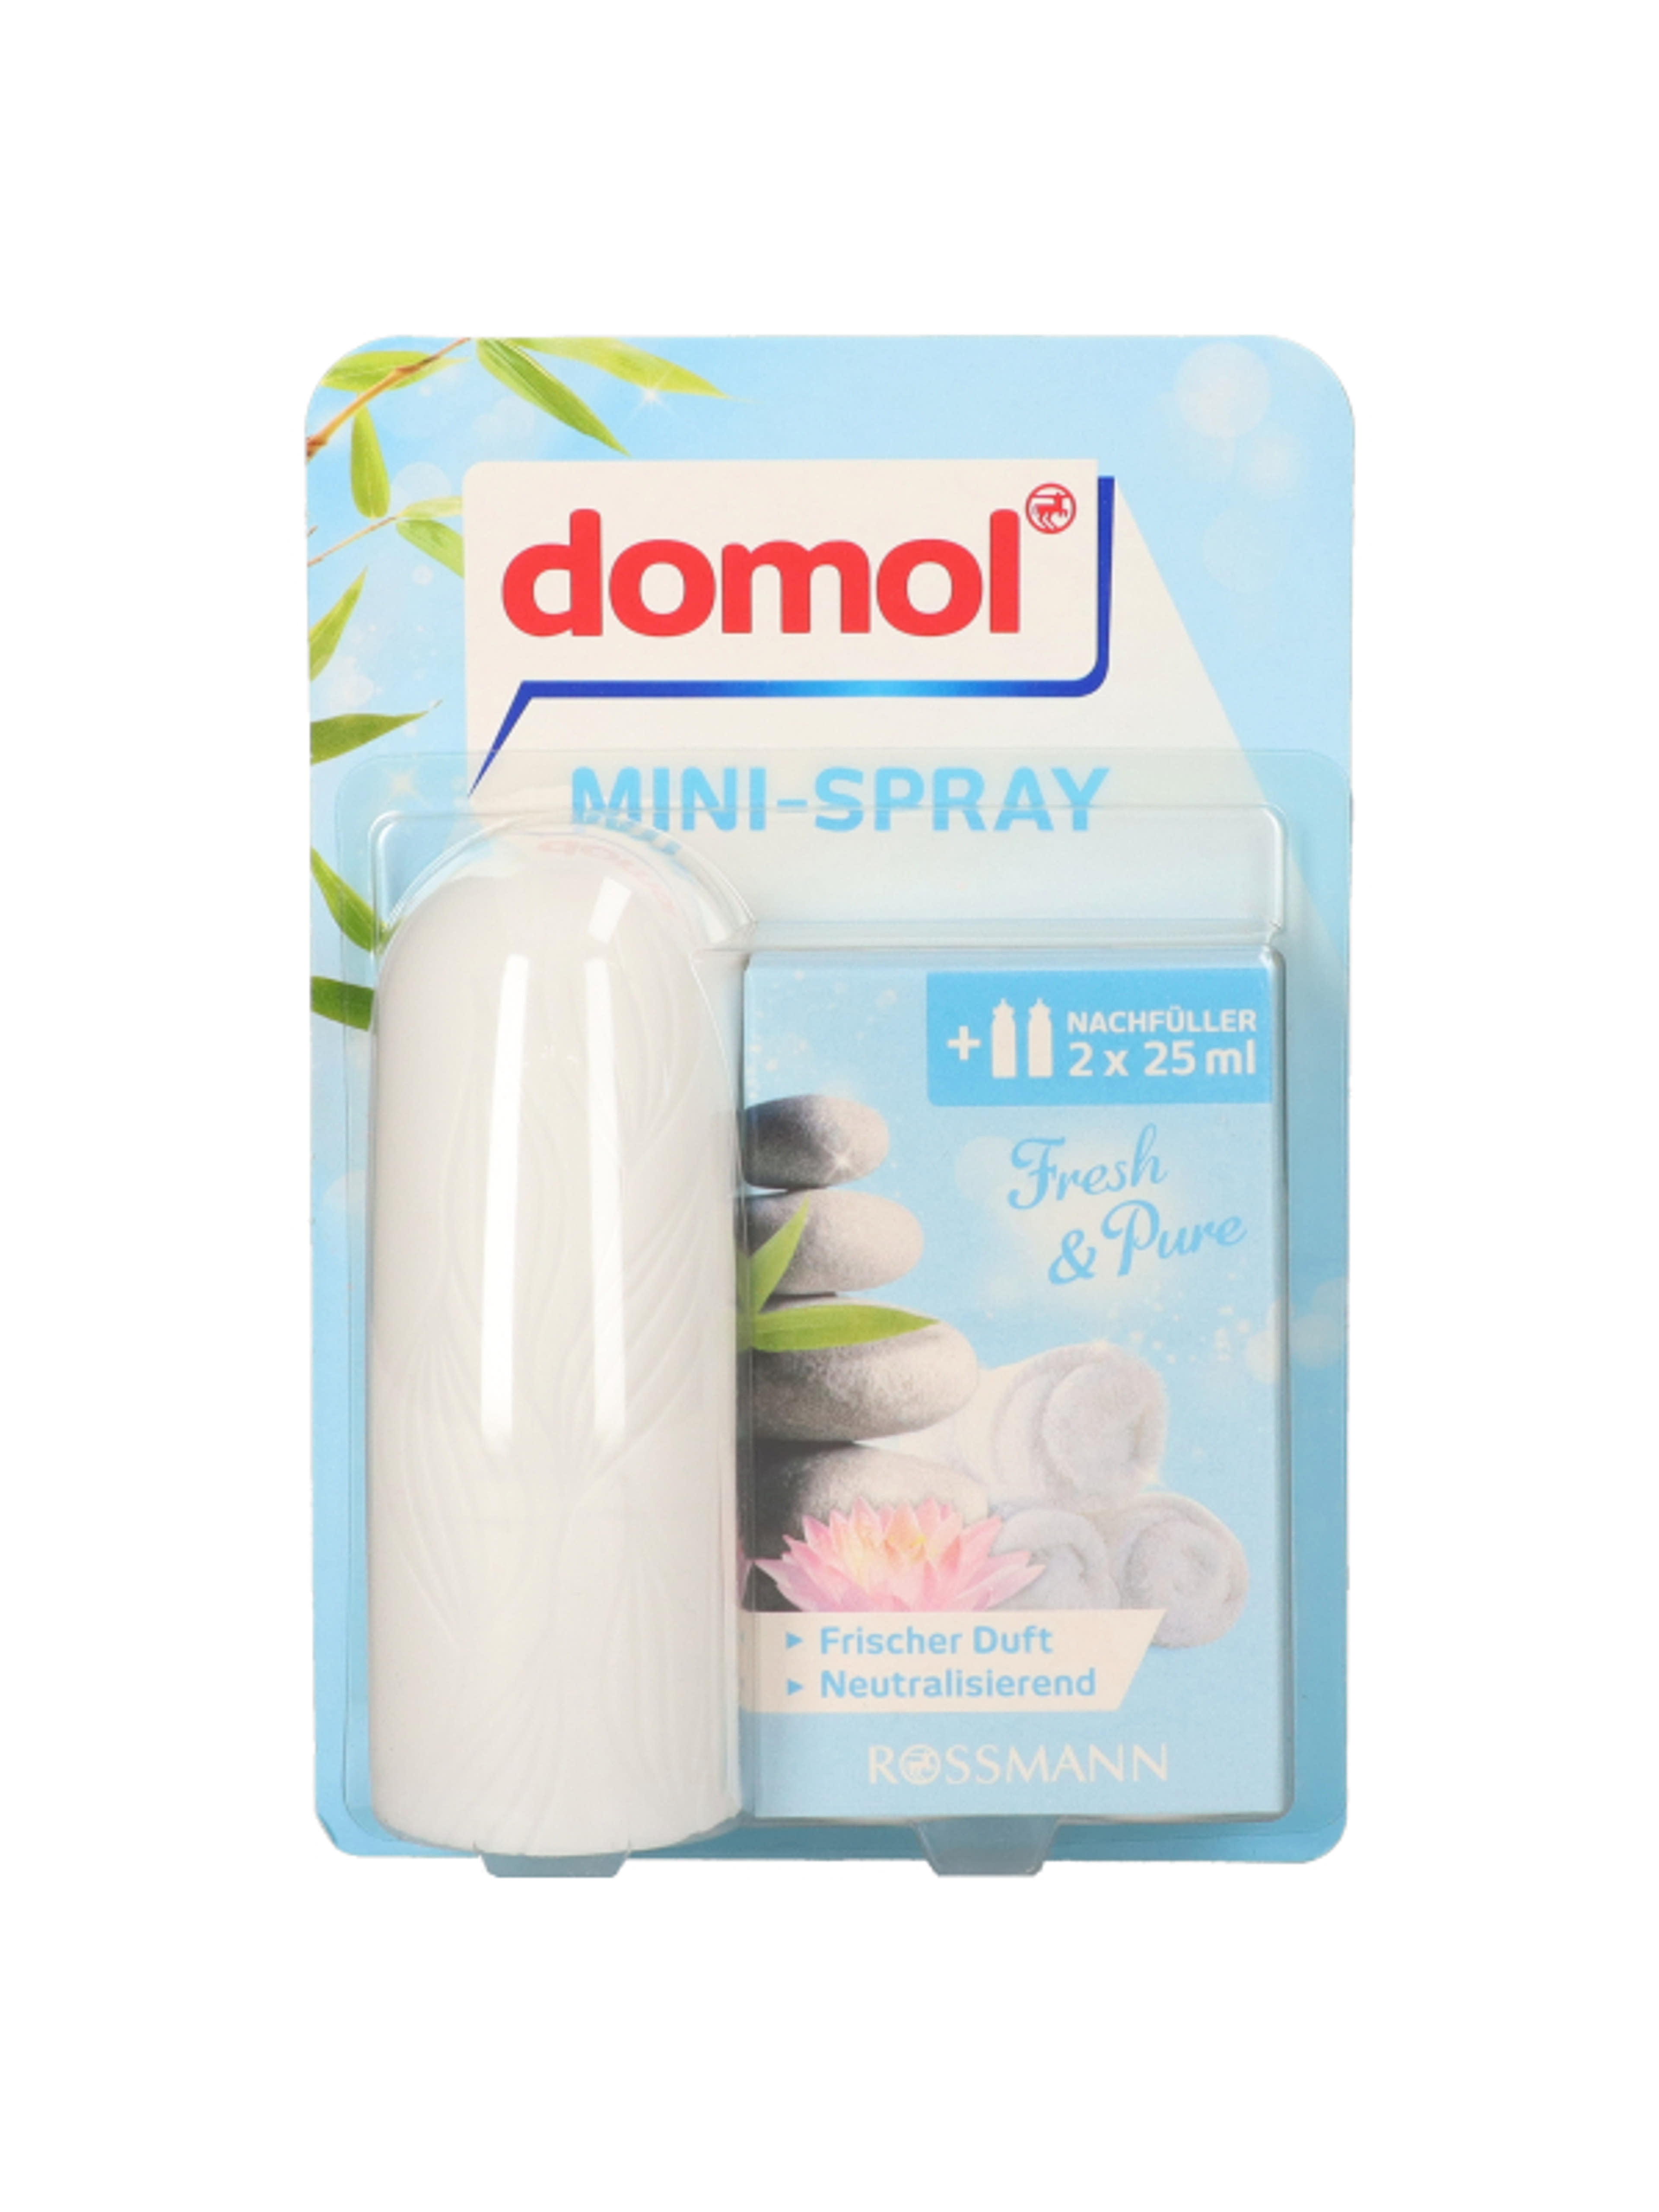 Domol Original Orange Mini-Spray - 50 ml-1